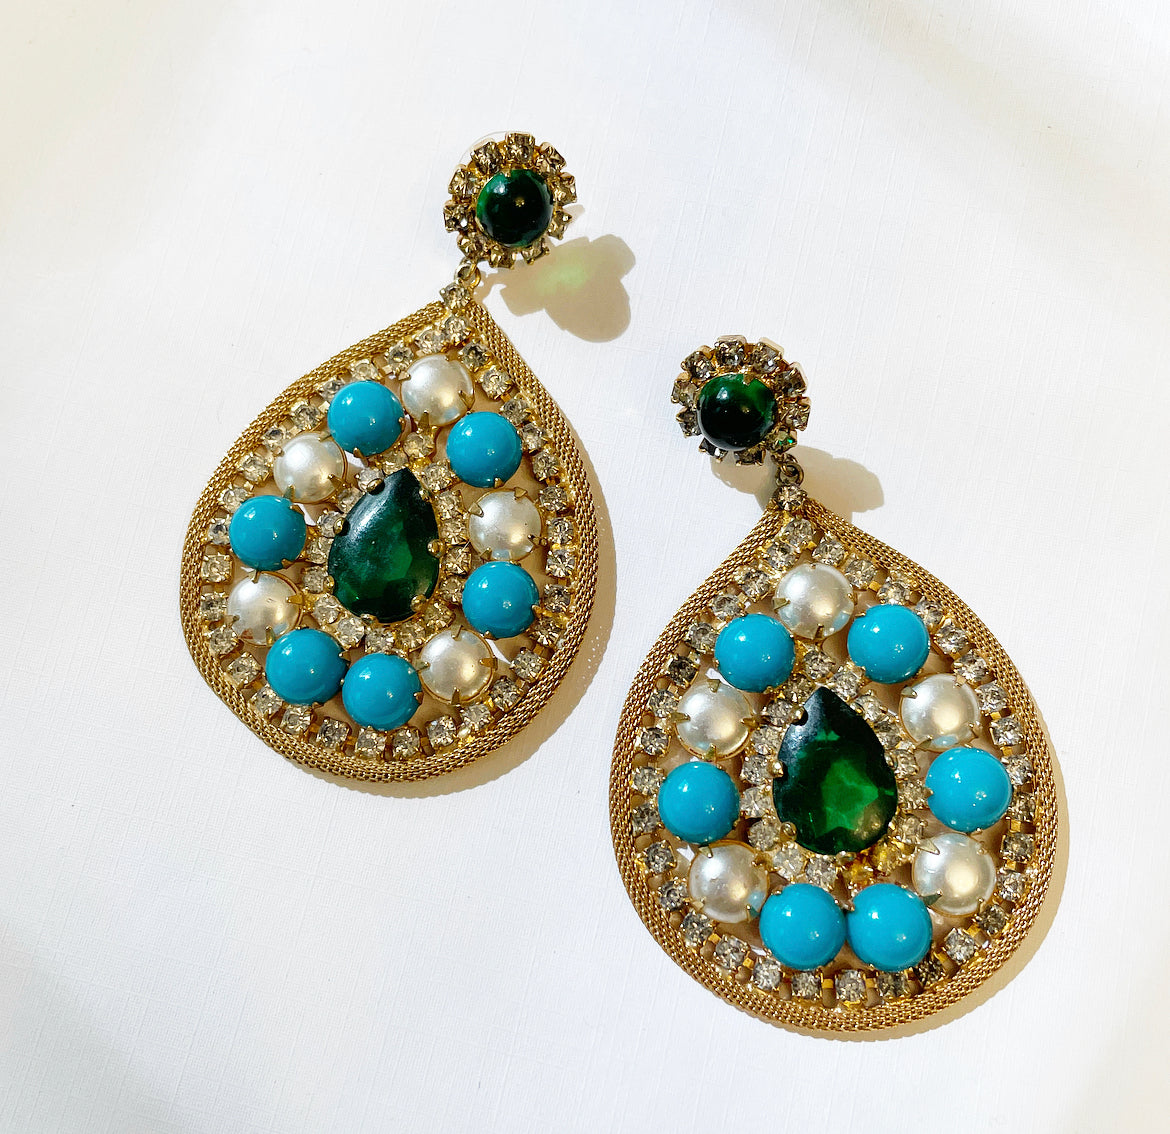 Vintage rhinestone statement earrings